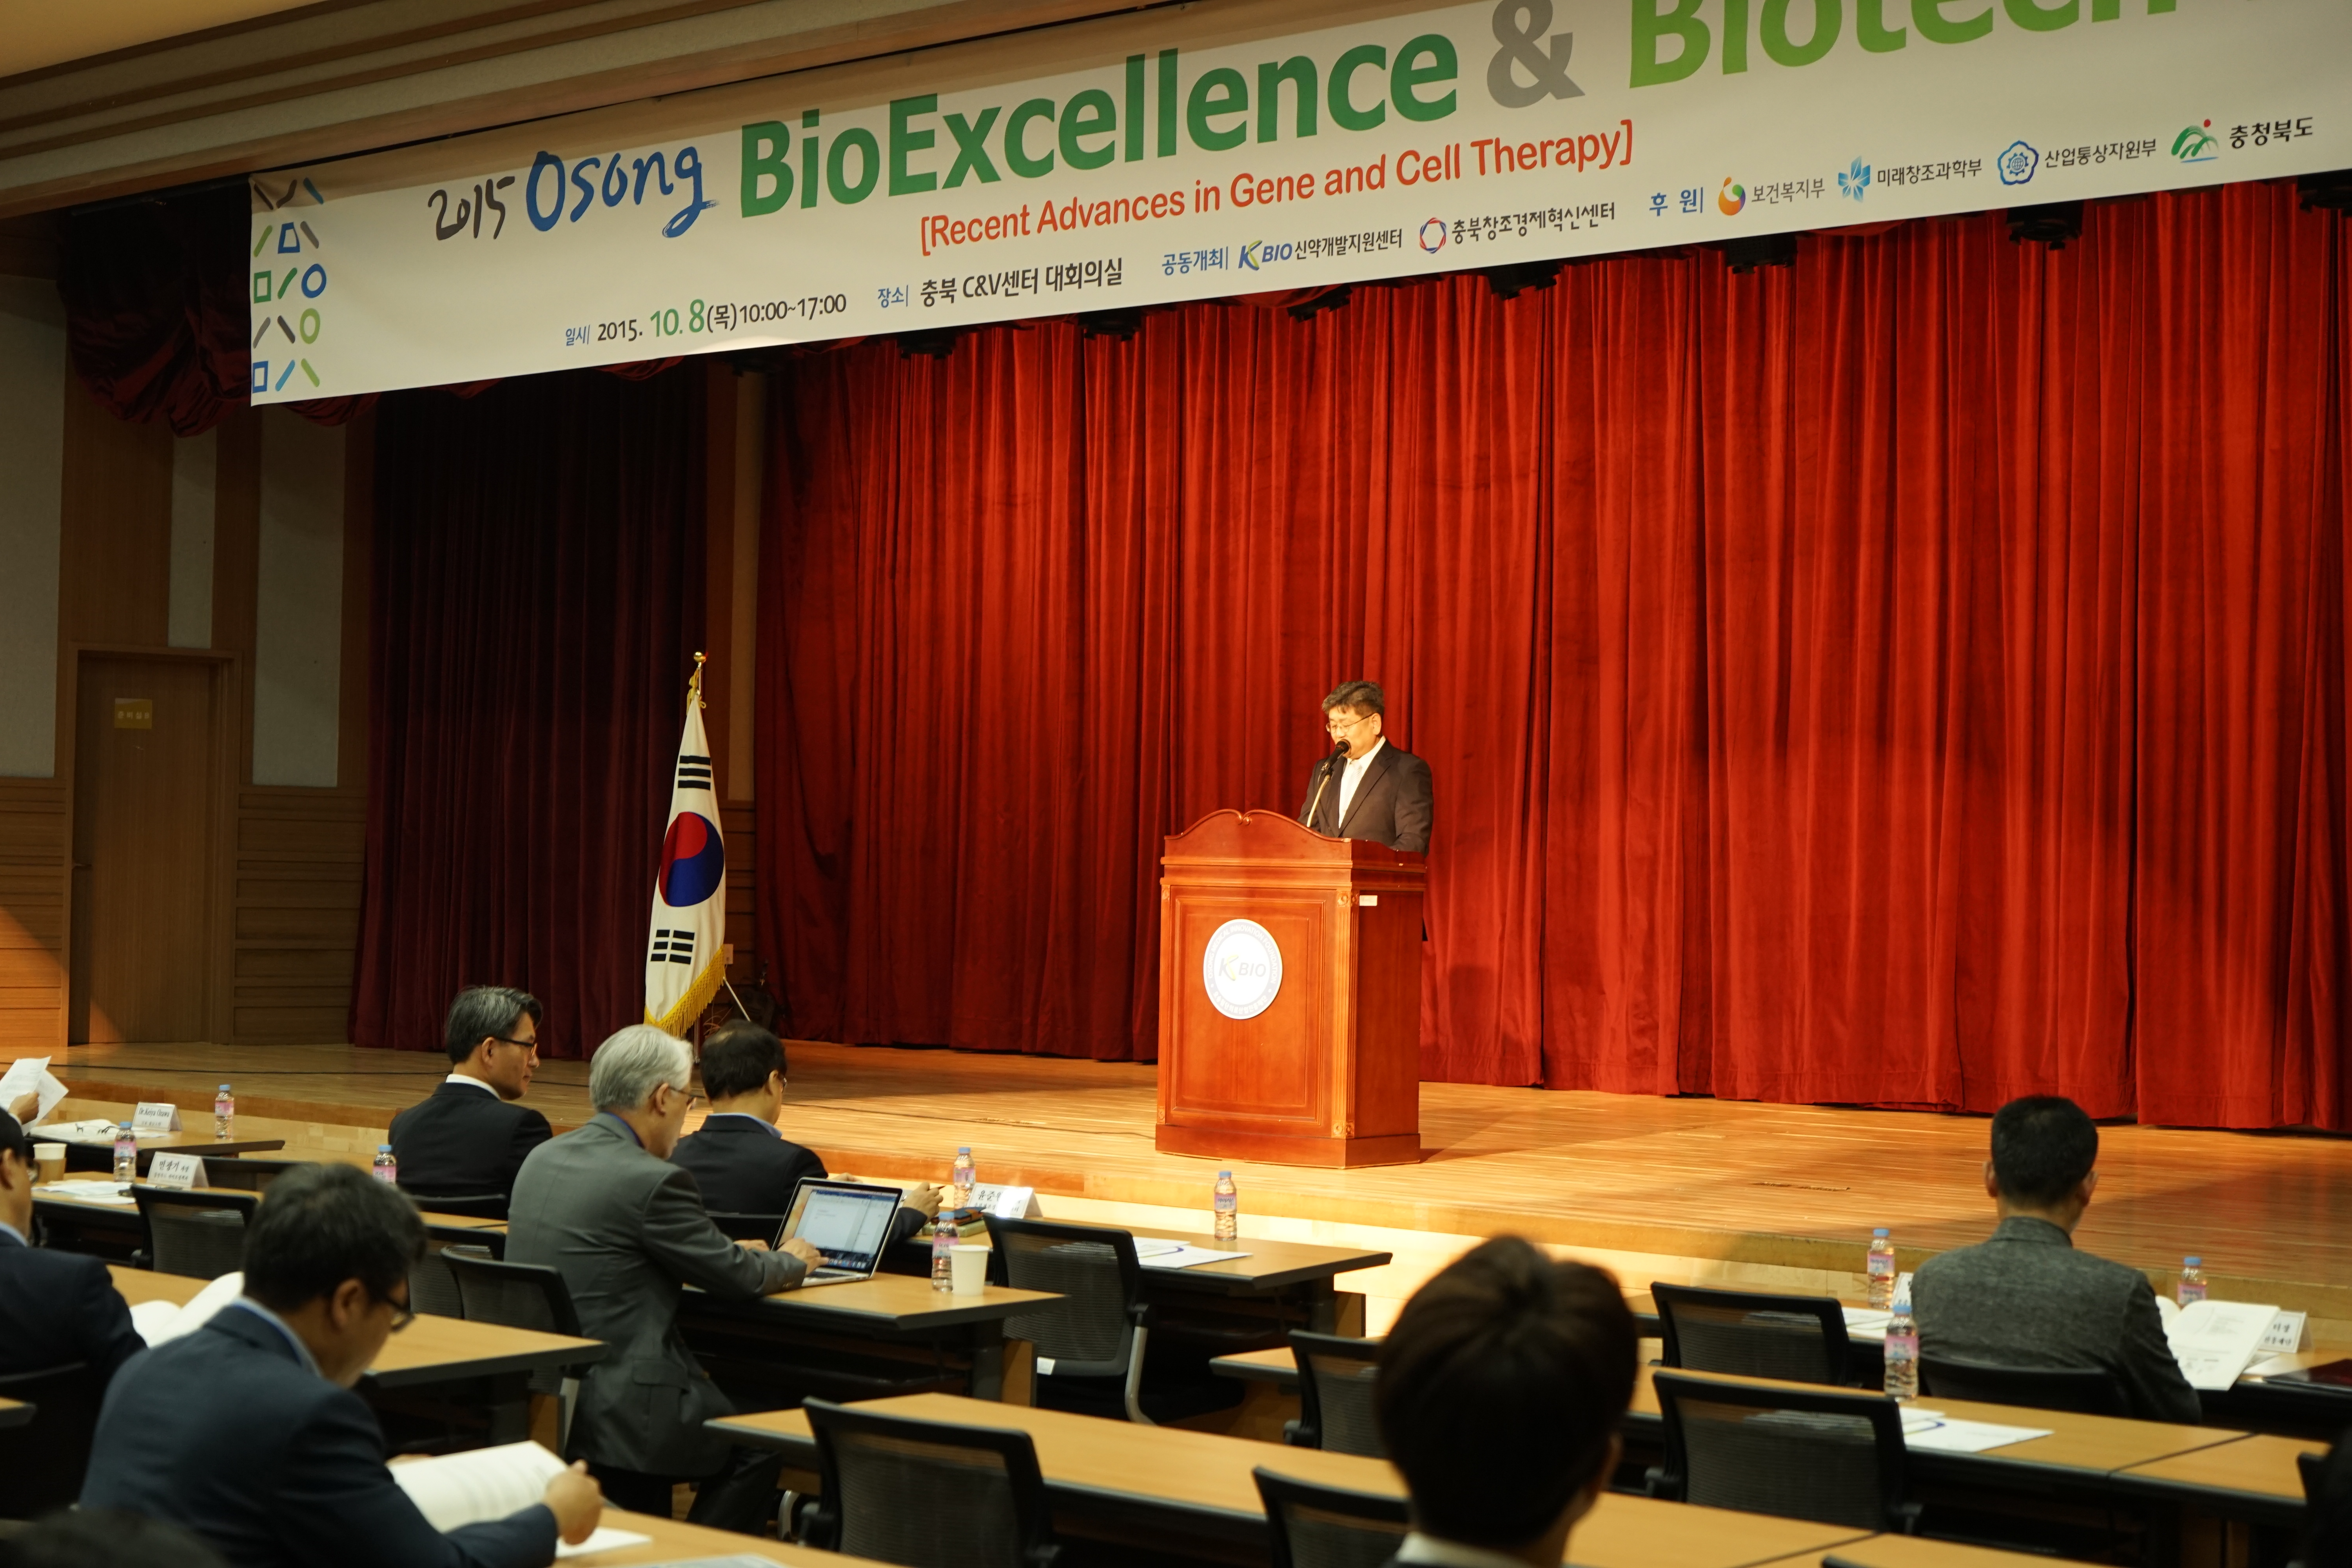 2015 Osong BioExcellence & Biotech Fair 주요사진